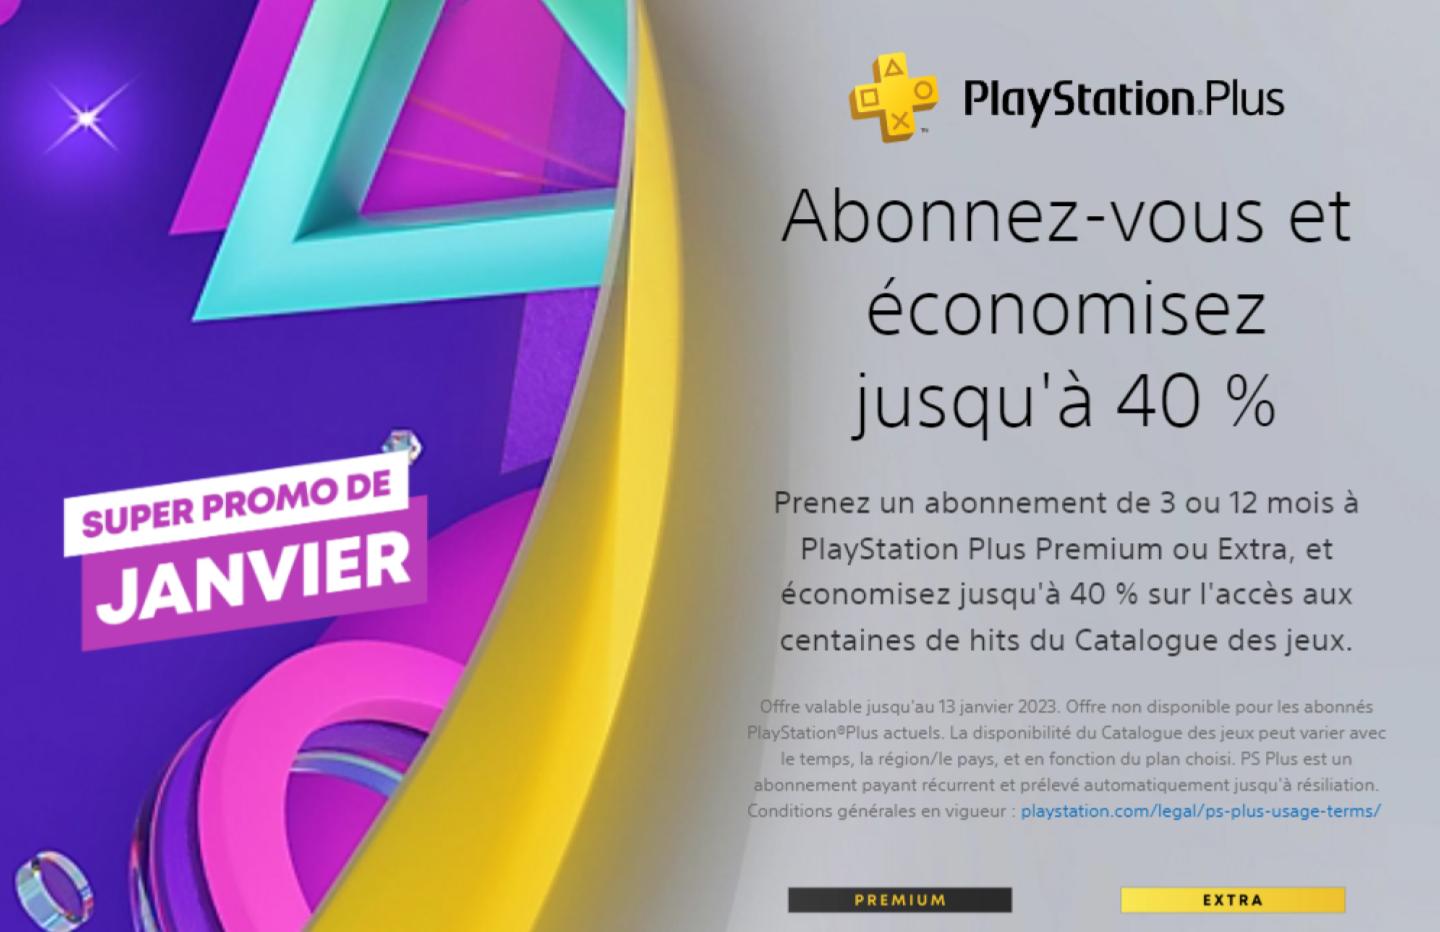 Bon plan : Abonnement Playstation Plus 12 mois PAS CHER